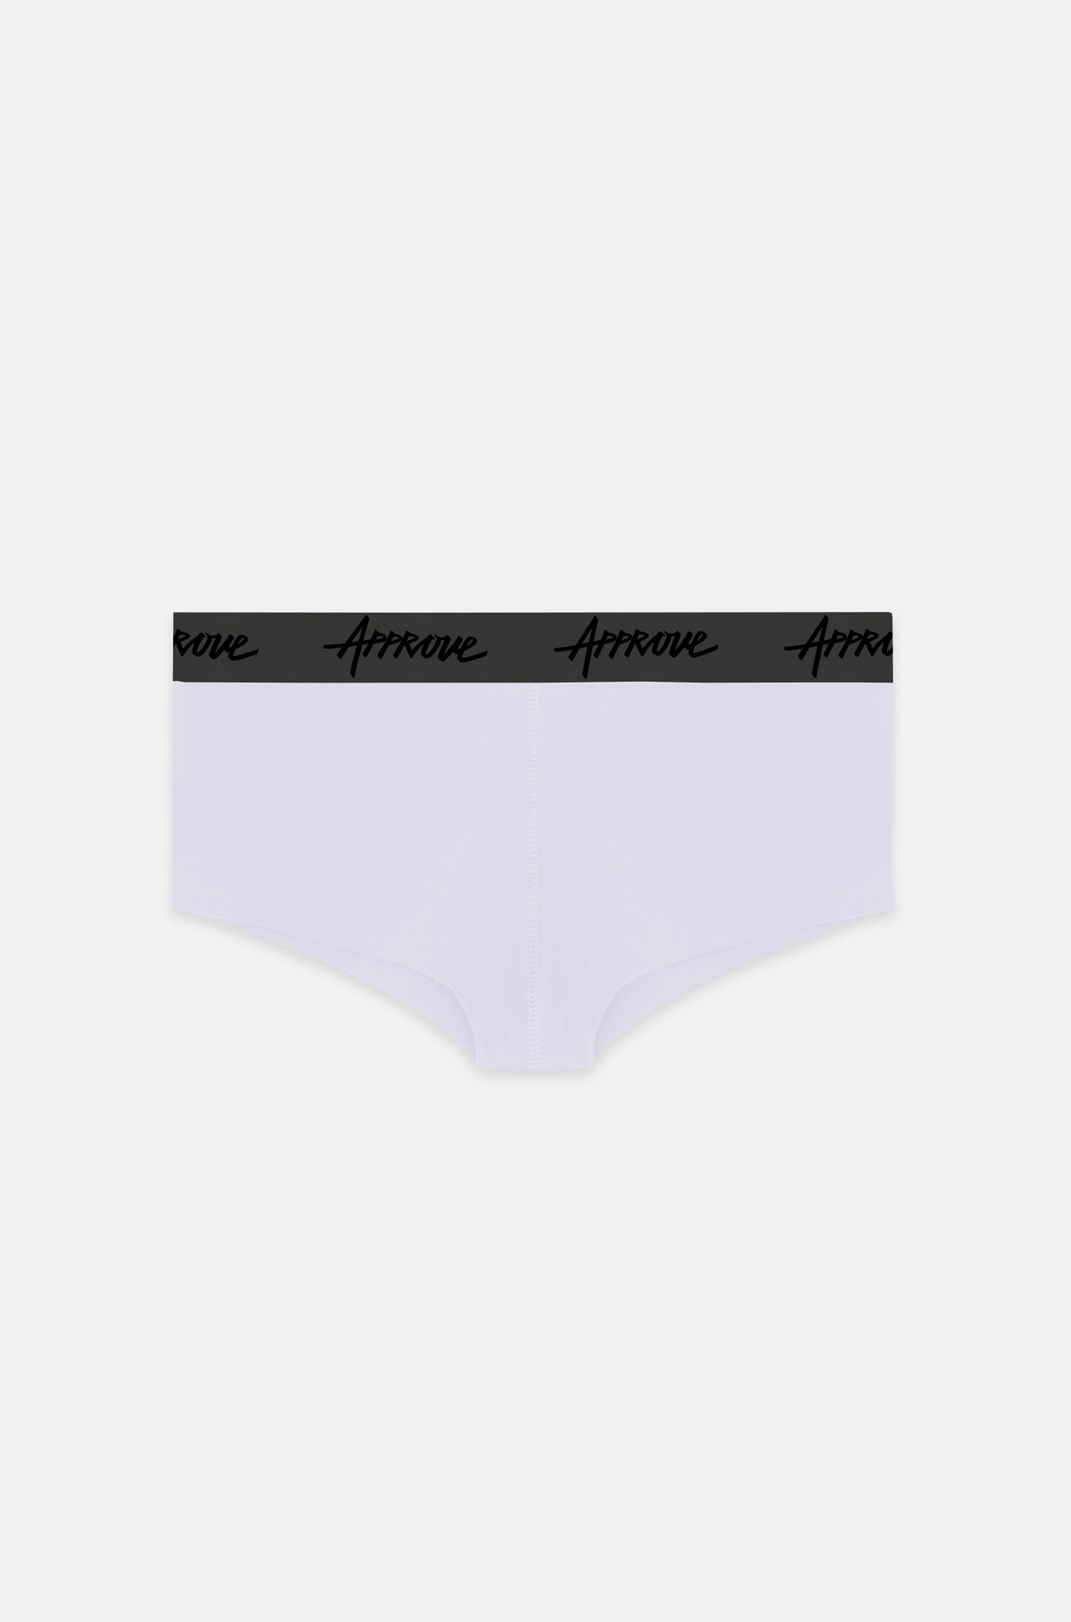 Shorts Underwear Approve Branco Com Cinza Chumbo